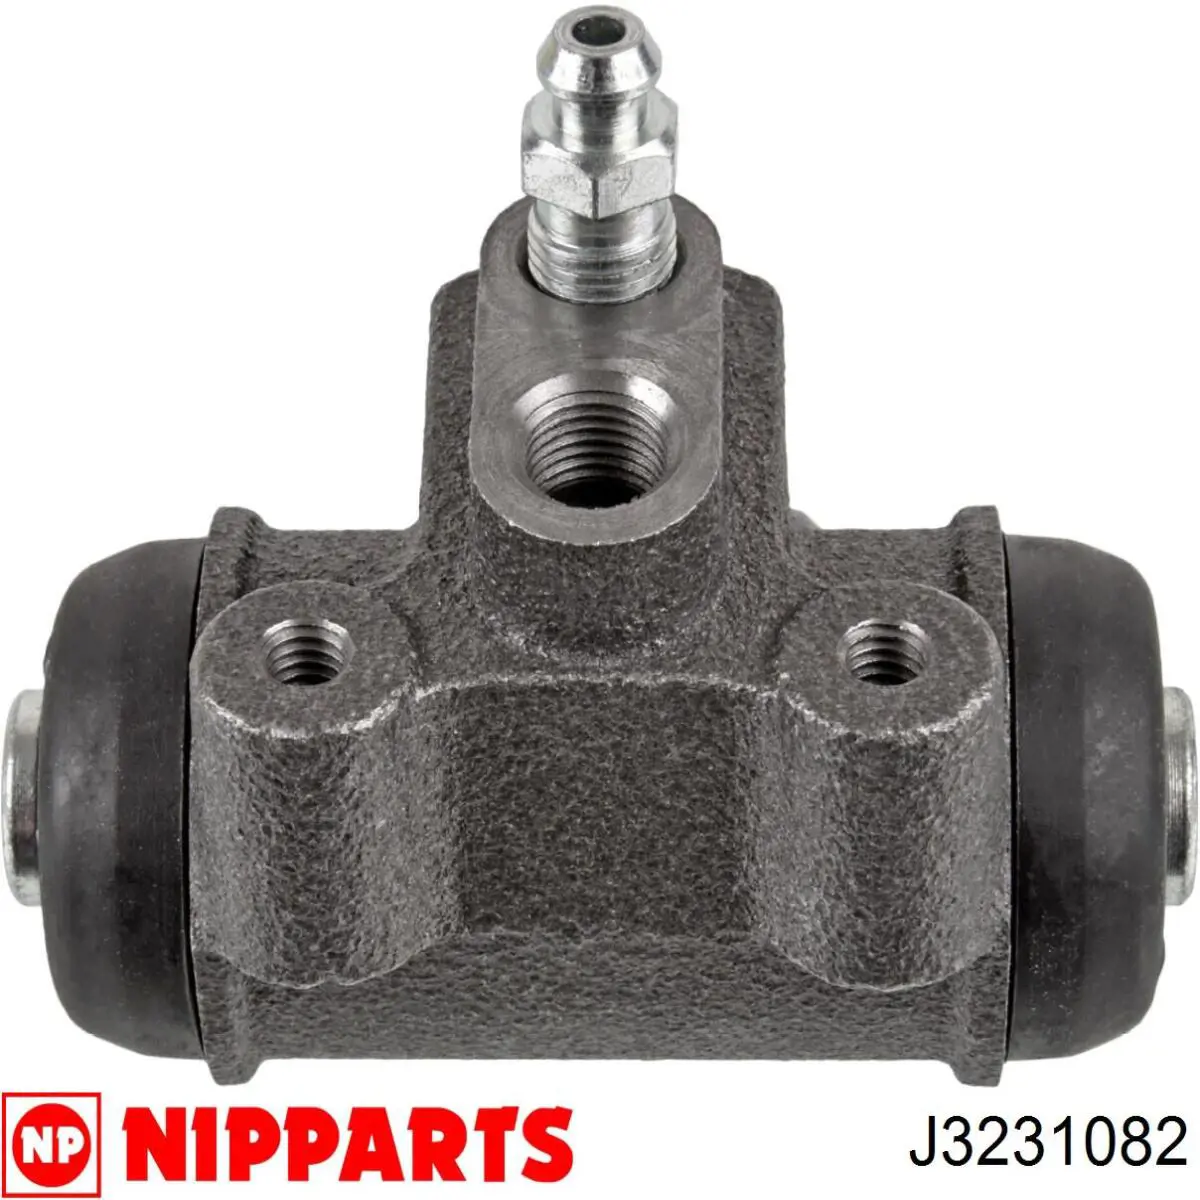 J3231082 Nipparts cilindro de freno de rueda trasero